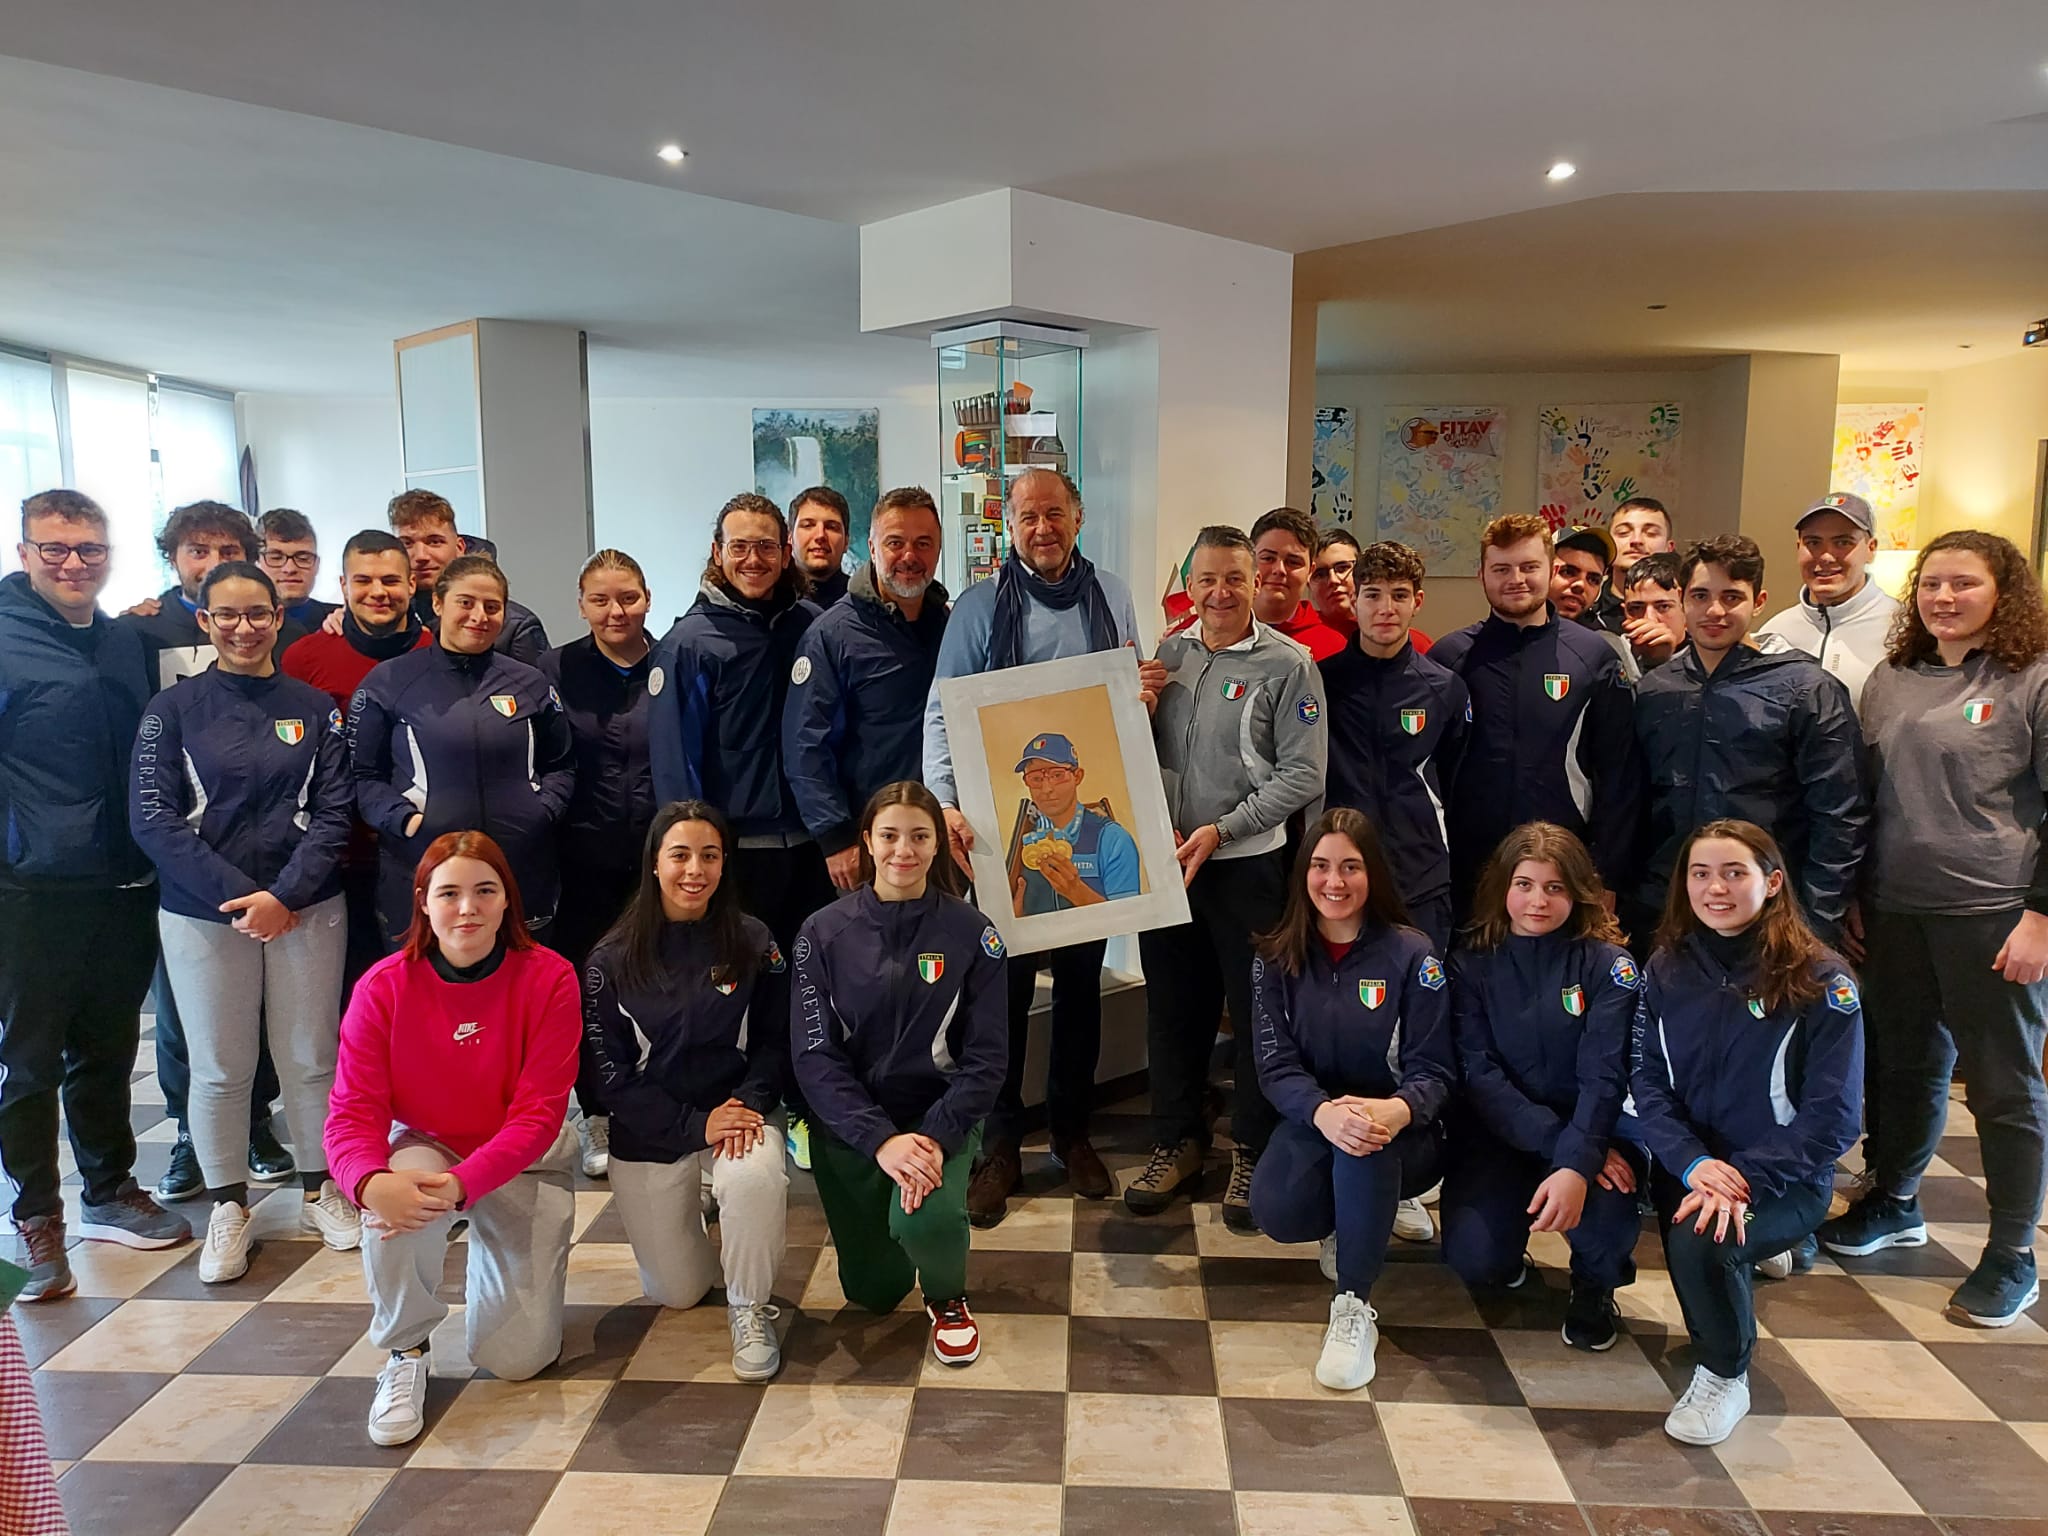 Cristian Ghilli, Pietro Ceppatelli dona alla Fitav un ritratto del giovane campione scomparso